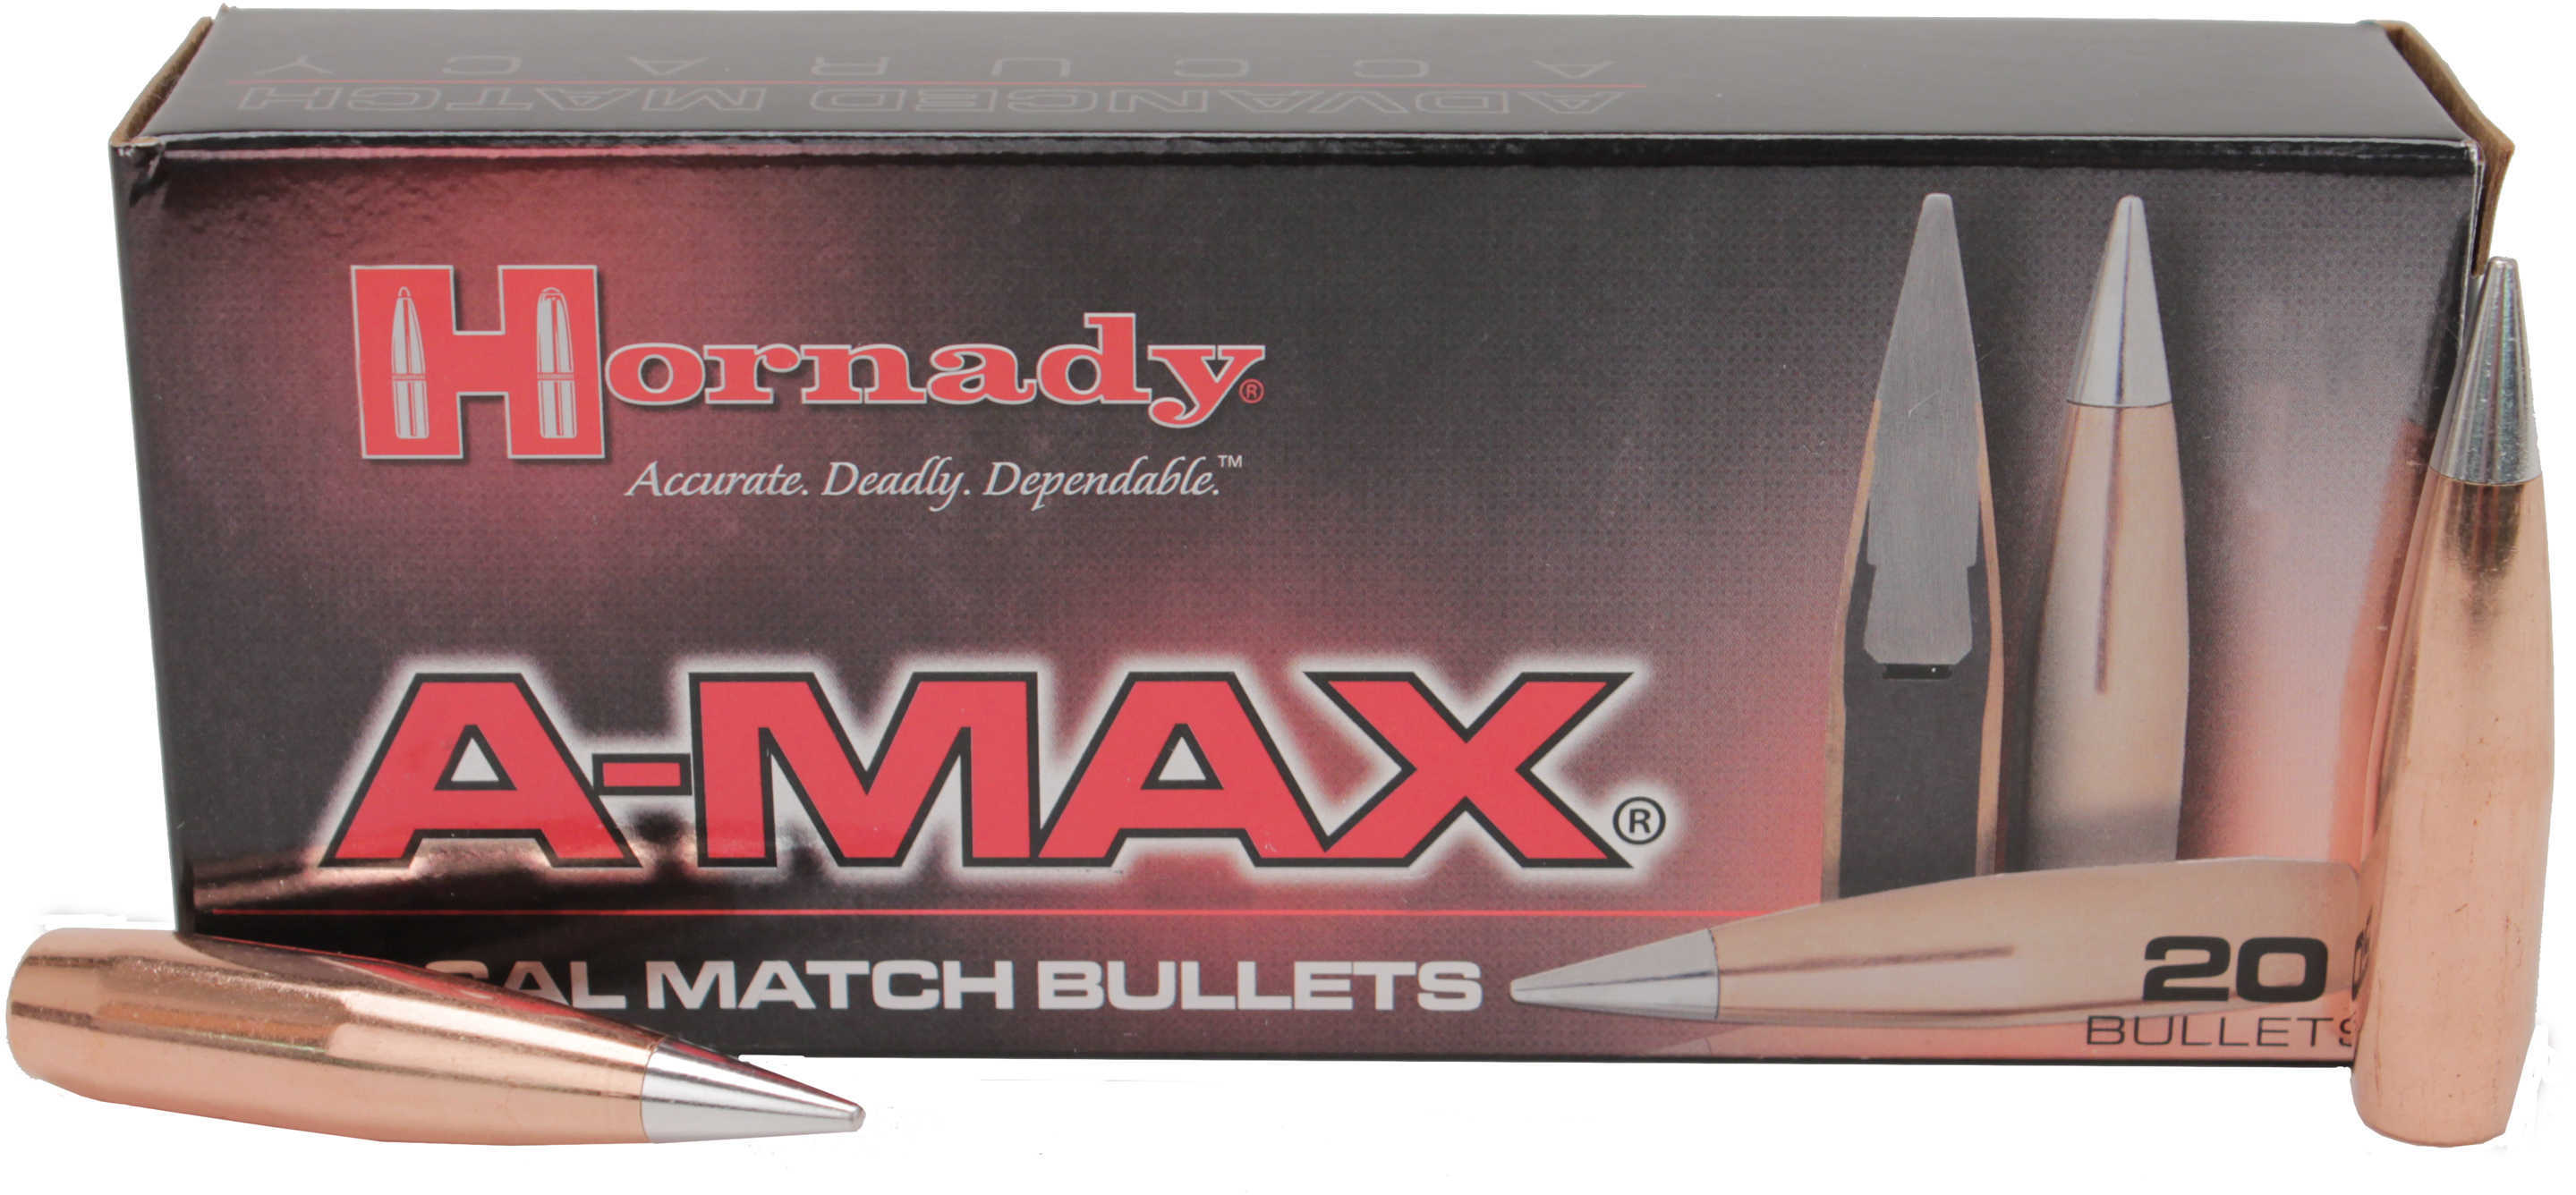 Hornady 50 Caliber 750 Grain A-Max Per 20 Md: 5165 Bullets